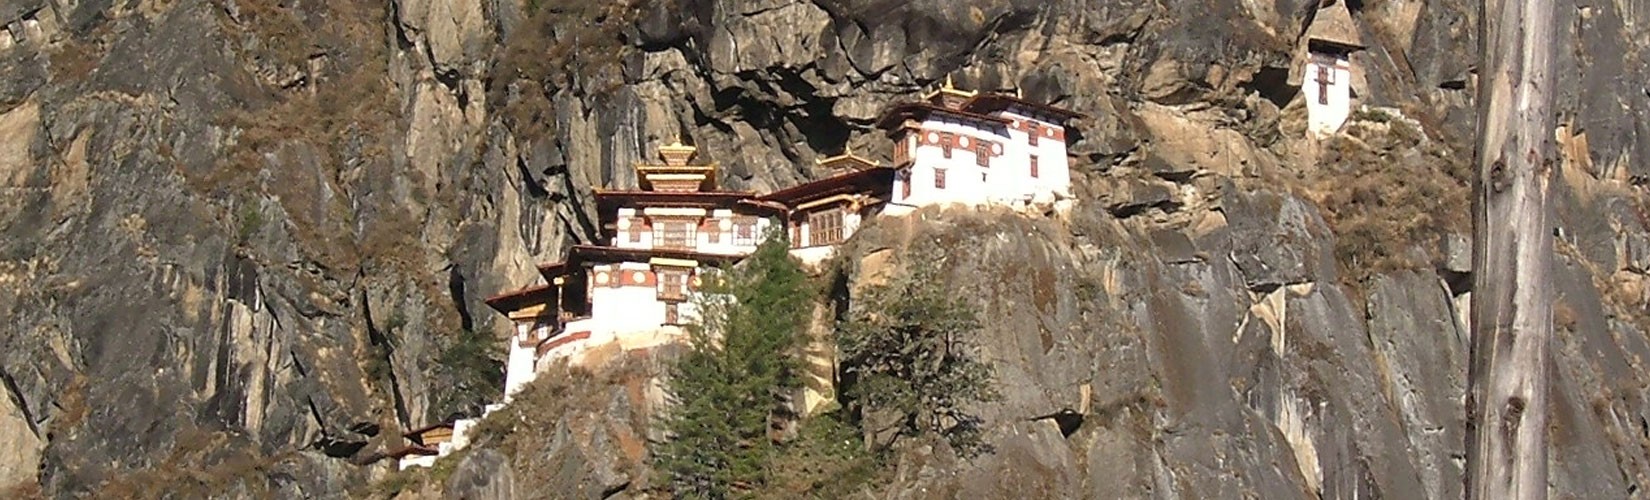 Great tour to hidden kingdom of Bhutan